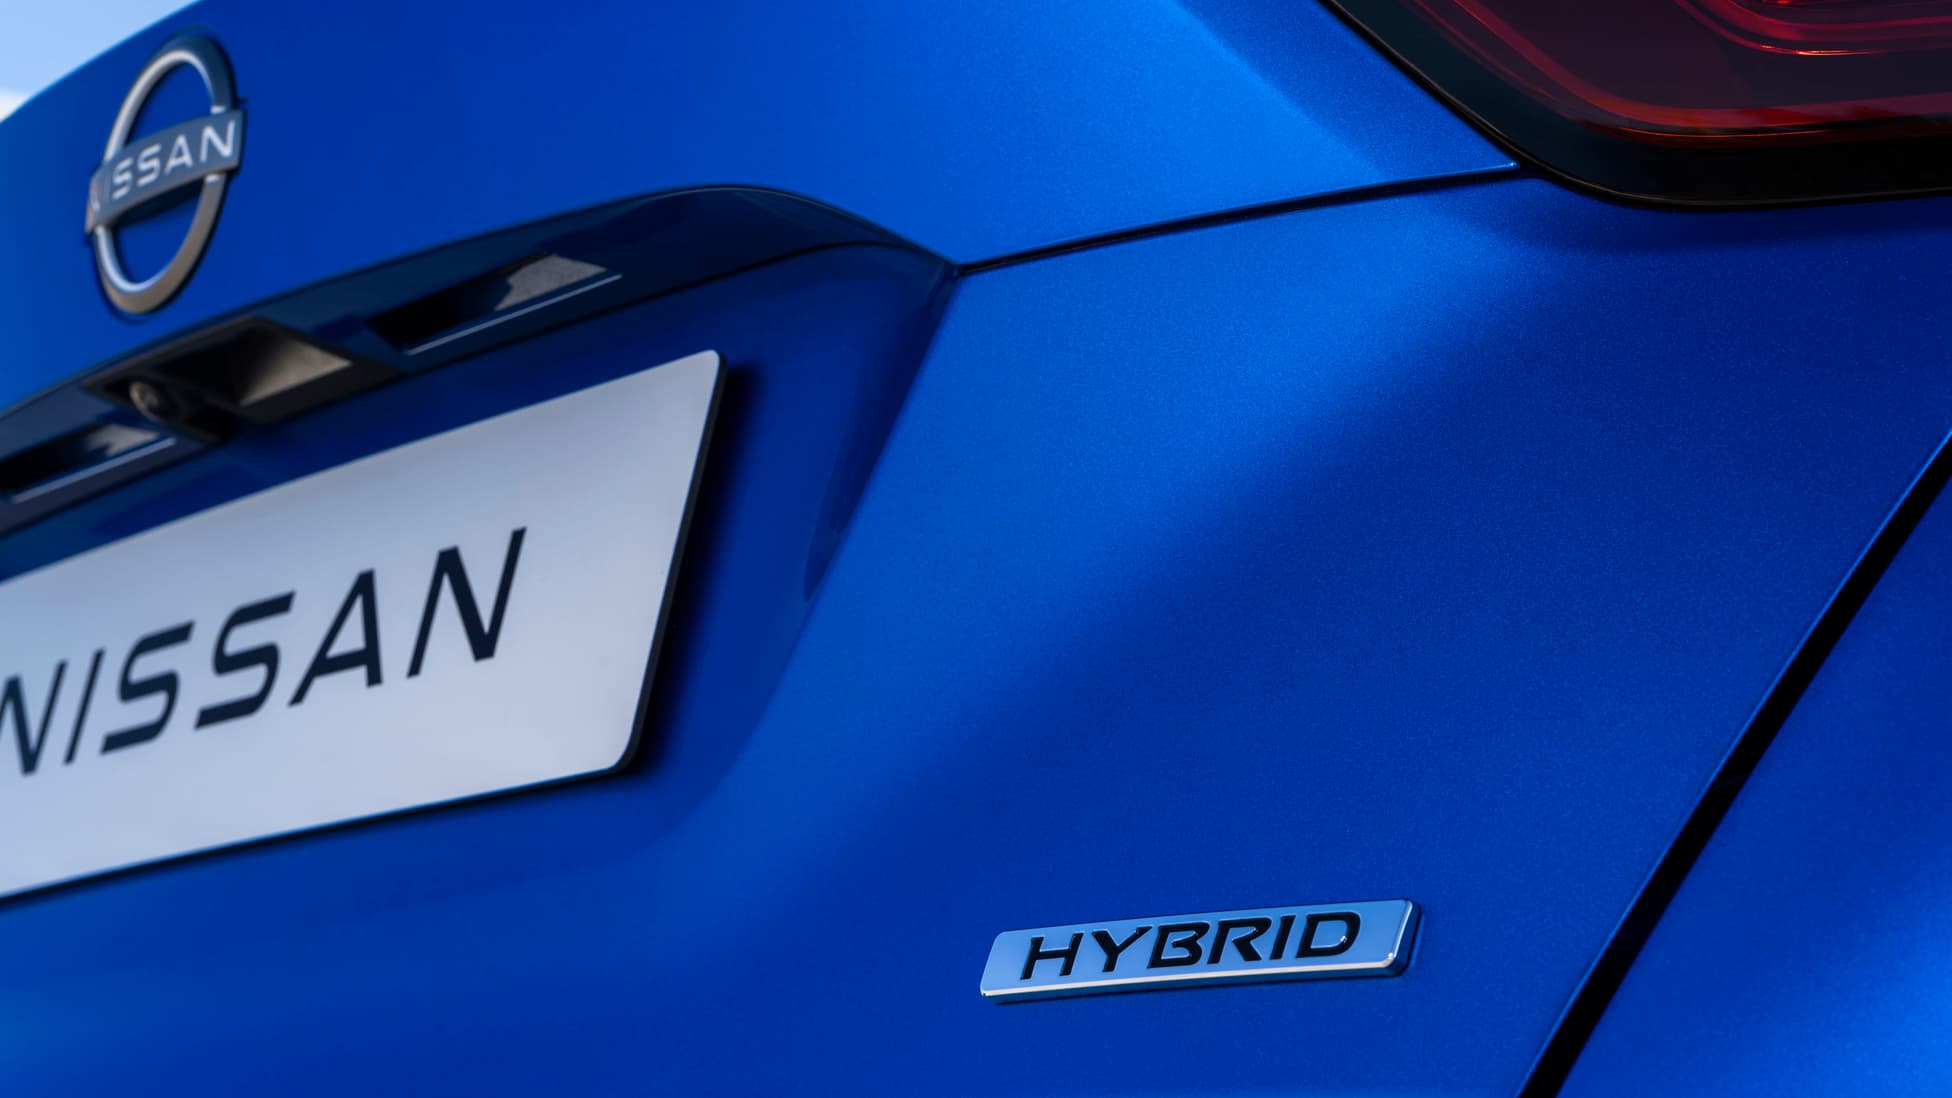 2022 Nissan Juke Hybrid specs, nissan juke hybrid about, nissan juke hybrid performance, nissan juke hybrid specifications, nissan juke hybrid range, nissan juke hybrid engine